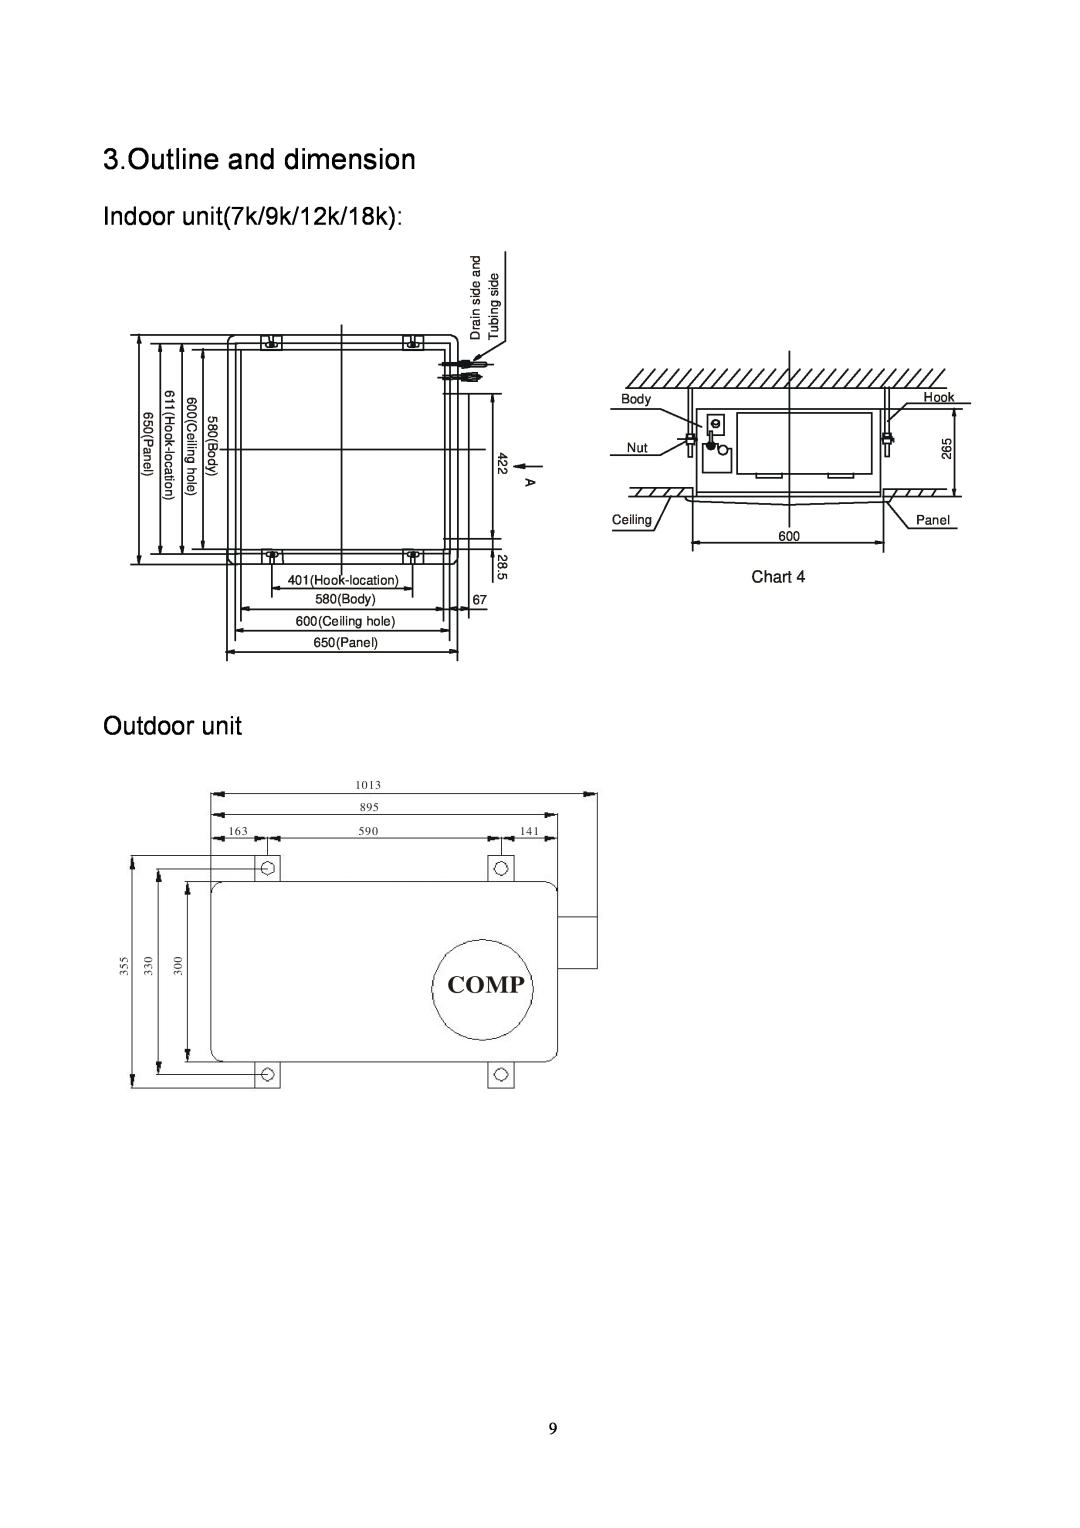 Sinclair SMF-C12AI, SMF-4E27AI, SMF-C18AI Outline and dimension, Indoor unit7k/9k/12k/18k, Outdoor unit, Comp, Chart 